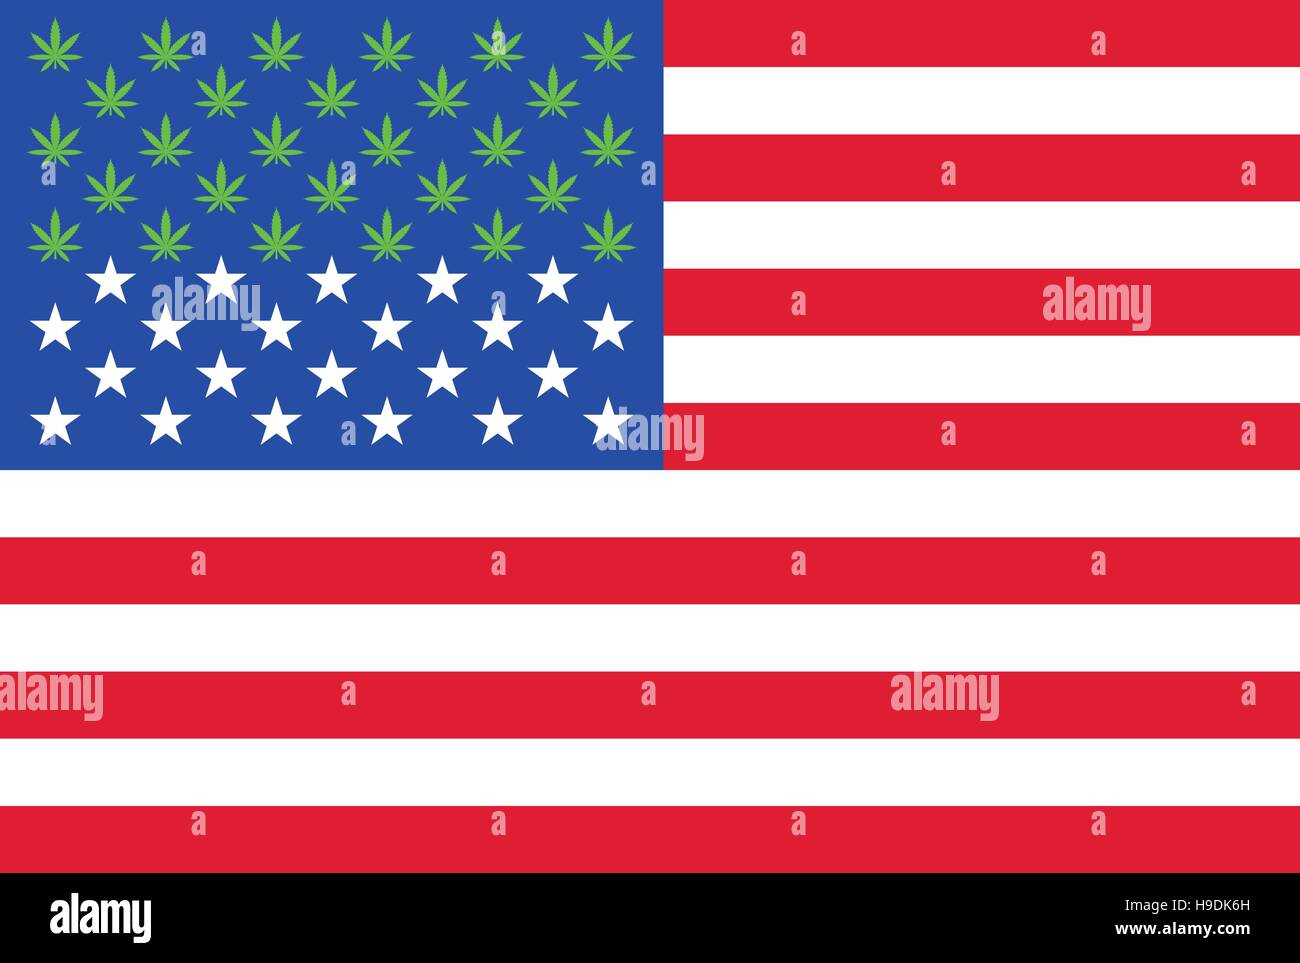 Maintenant le cannabis légal dans 28 États des États-Unis. États-unis d'Amérique drapeau avec 28 feuilles de marijuana au lieu d'étoiles infographie Illustration de Vecteur